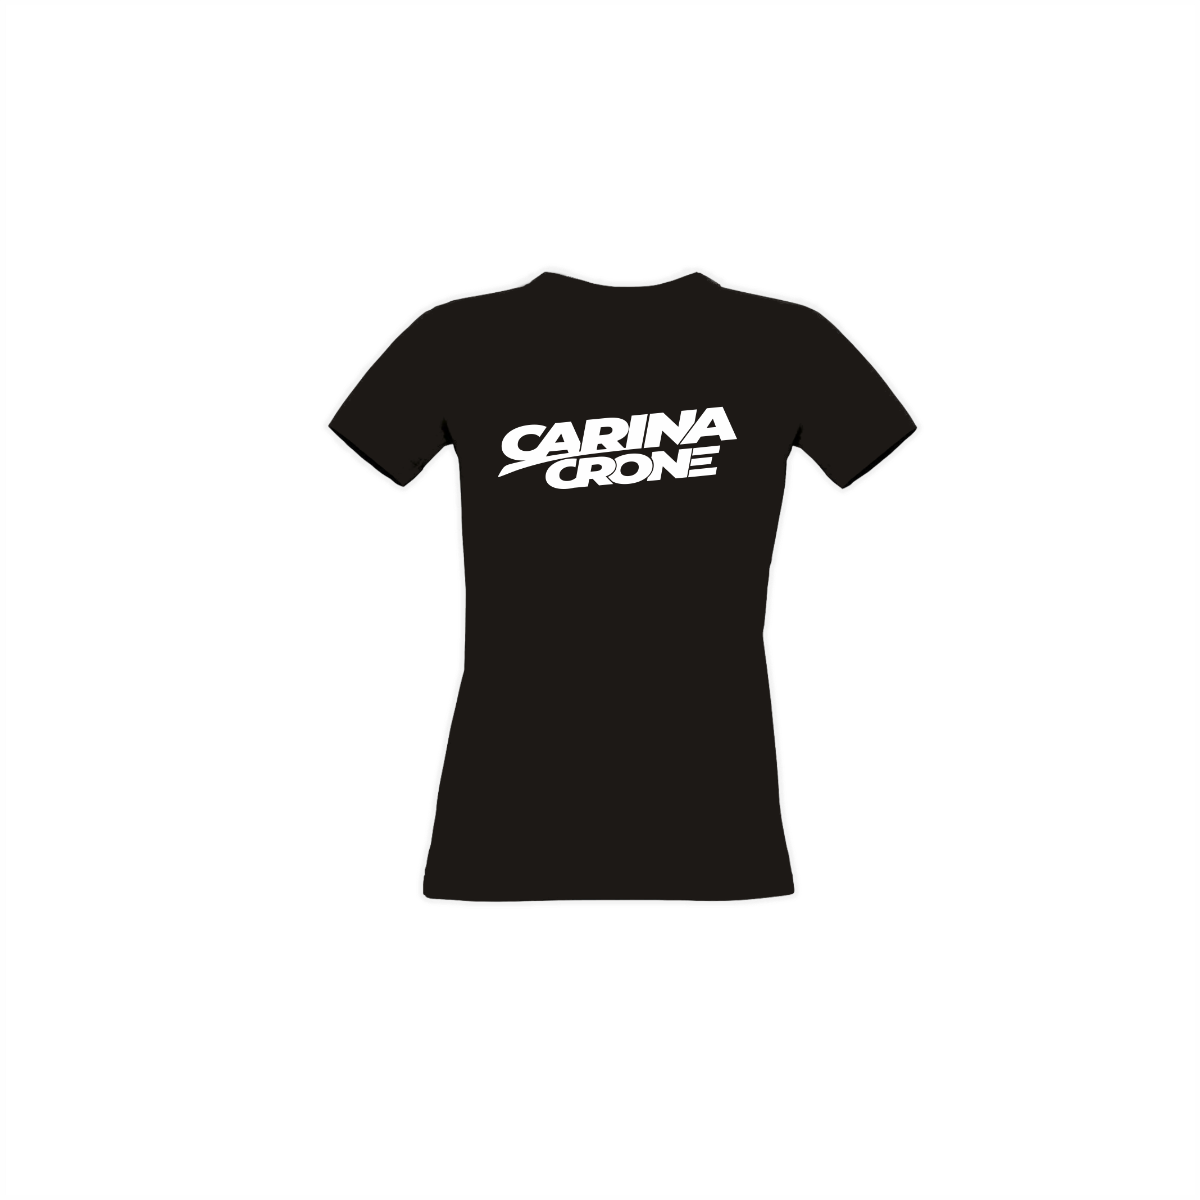 Girly-Shirt "CARINA CRONE Logo" schwarz